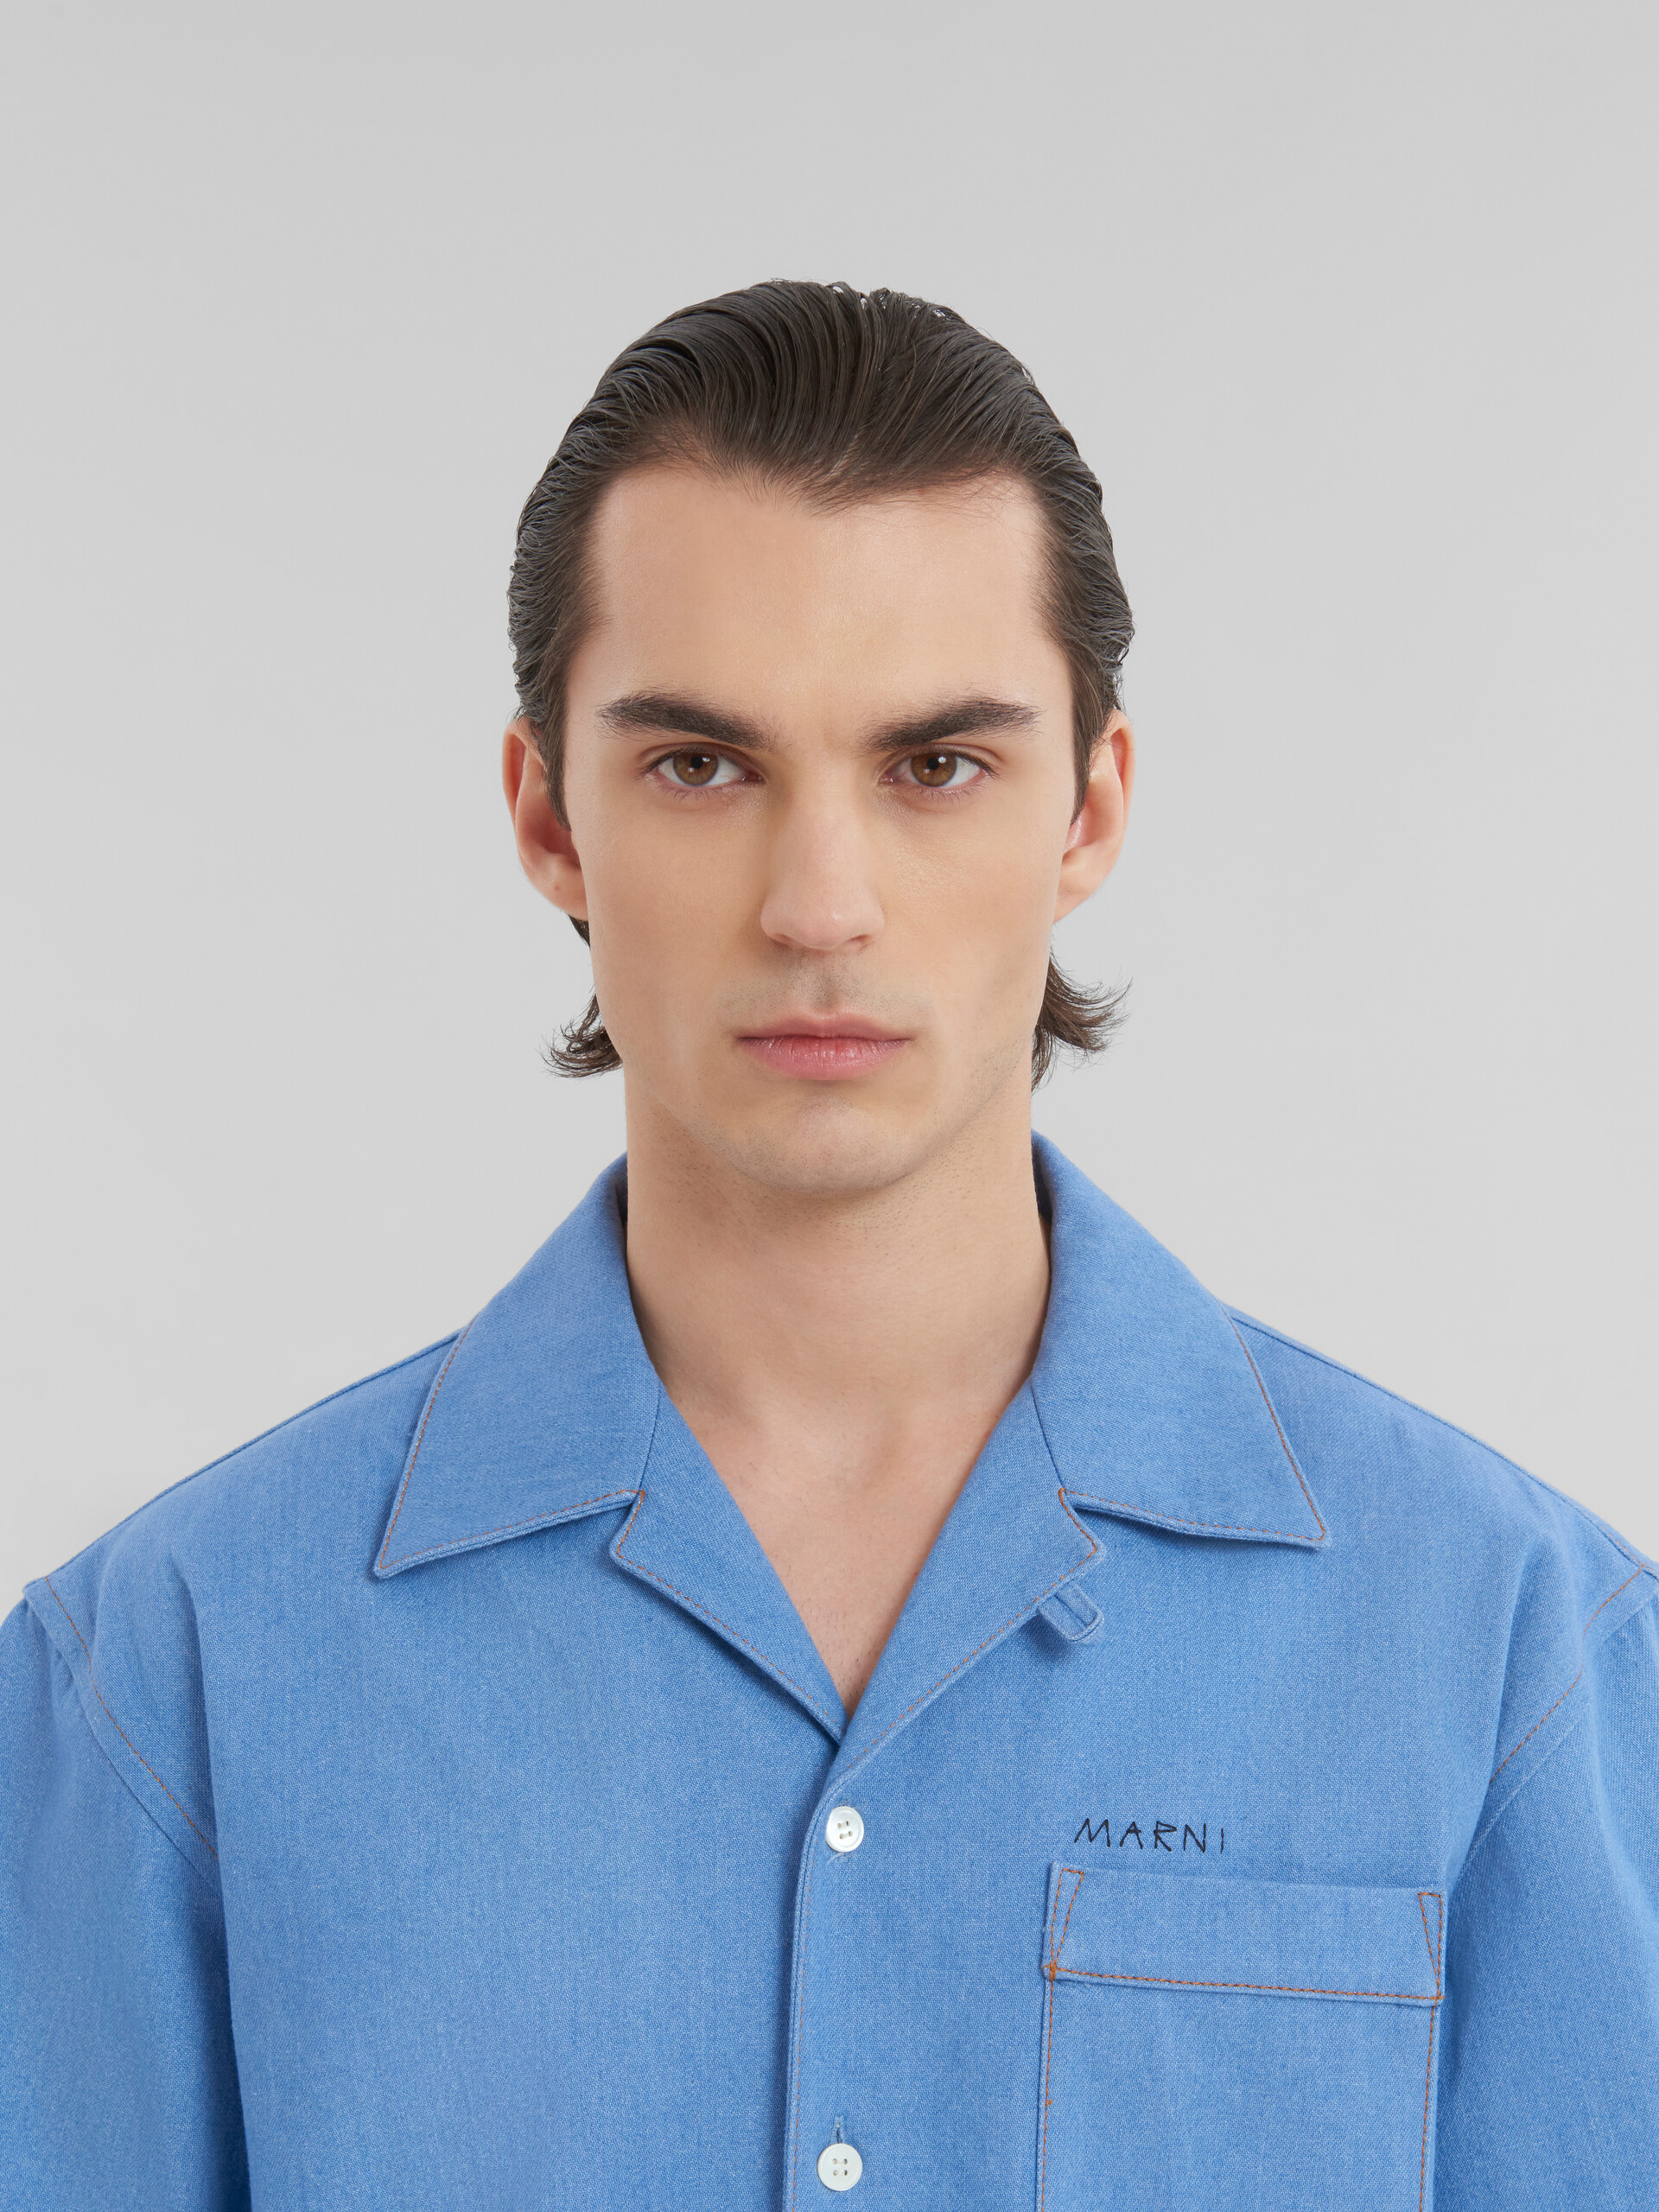 ブルー マルニ メンディングロゴ付き デニム製 ボーリングシャツ